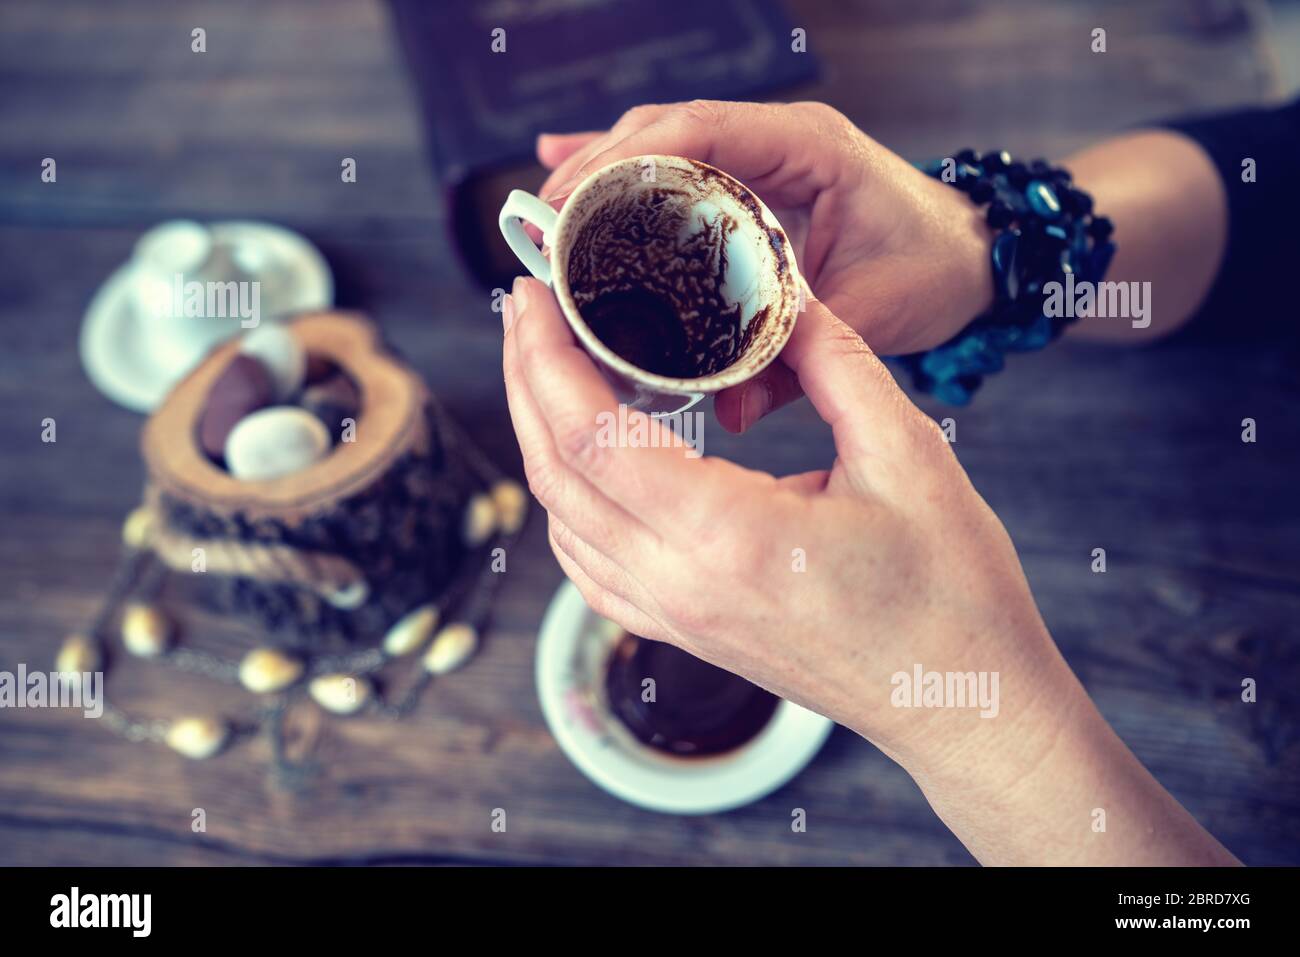 la mujer sostiene la taza y cuenta la fortuna con una taza de café tradicional turco Foto de stock